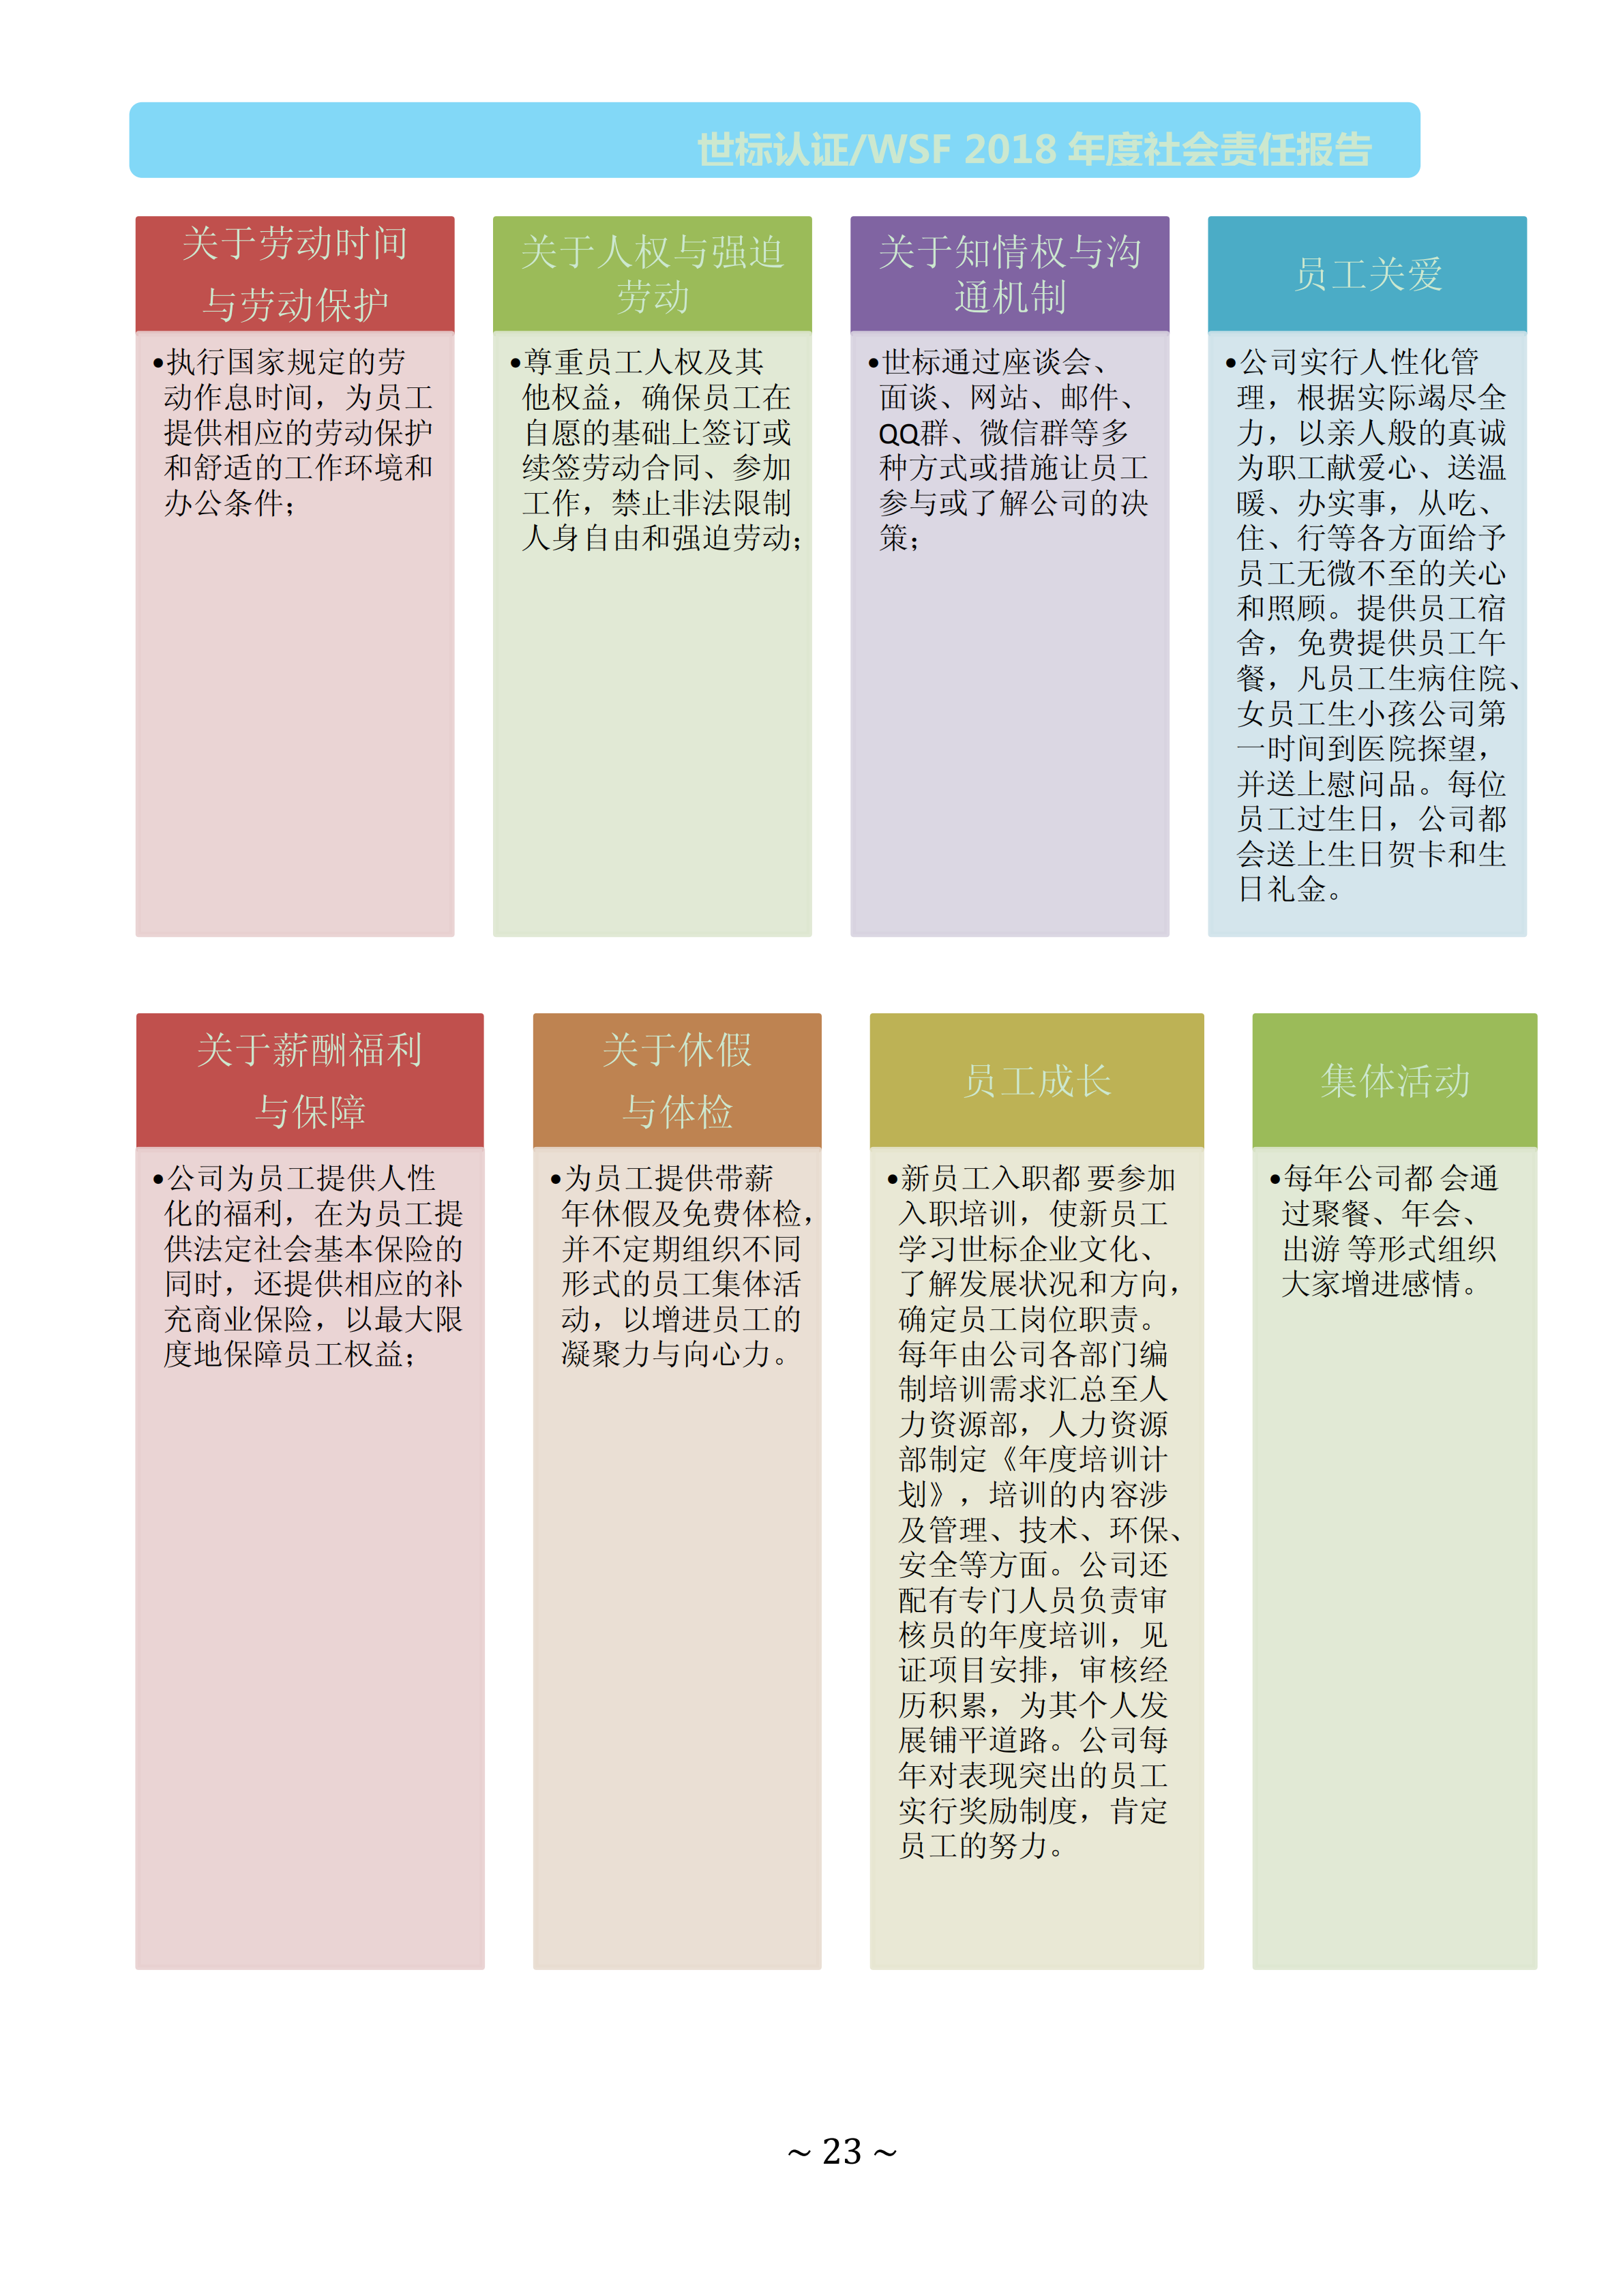  北京世标2018年社会责任报告(图22)